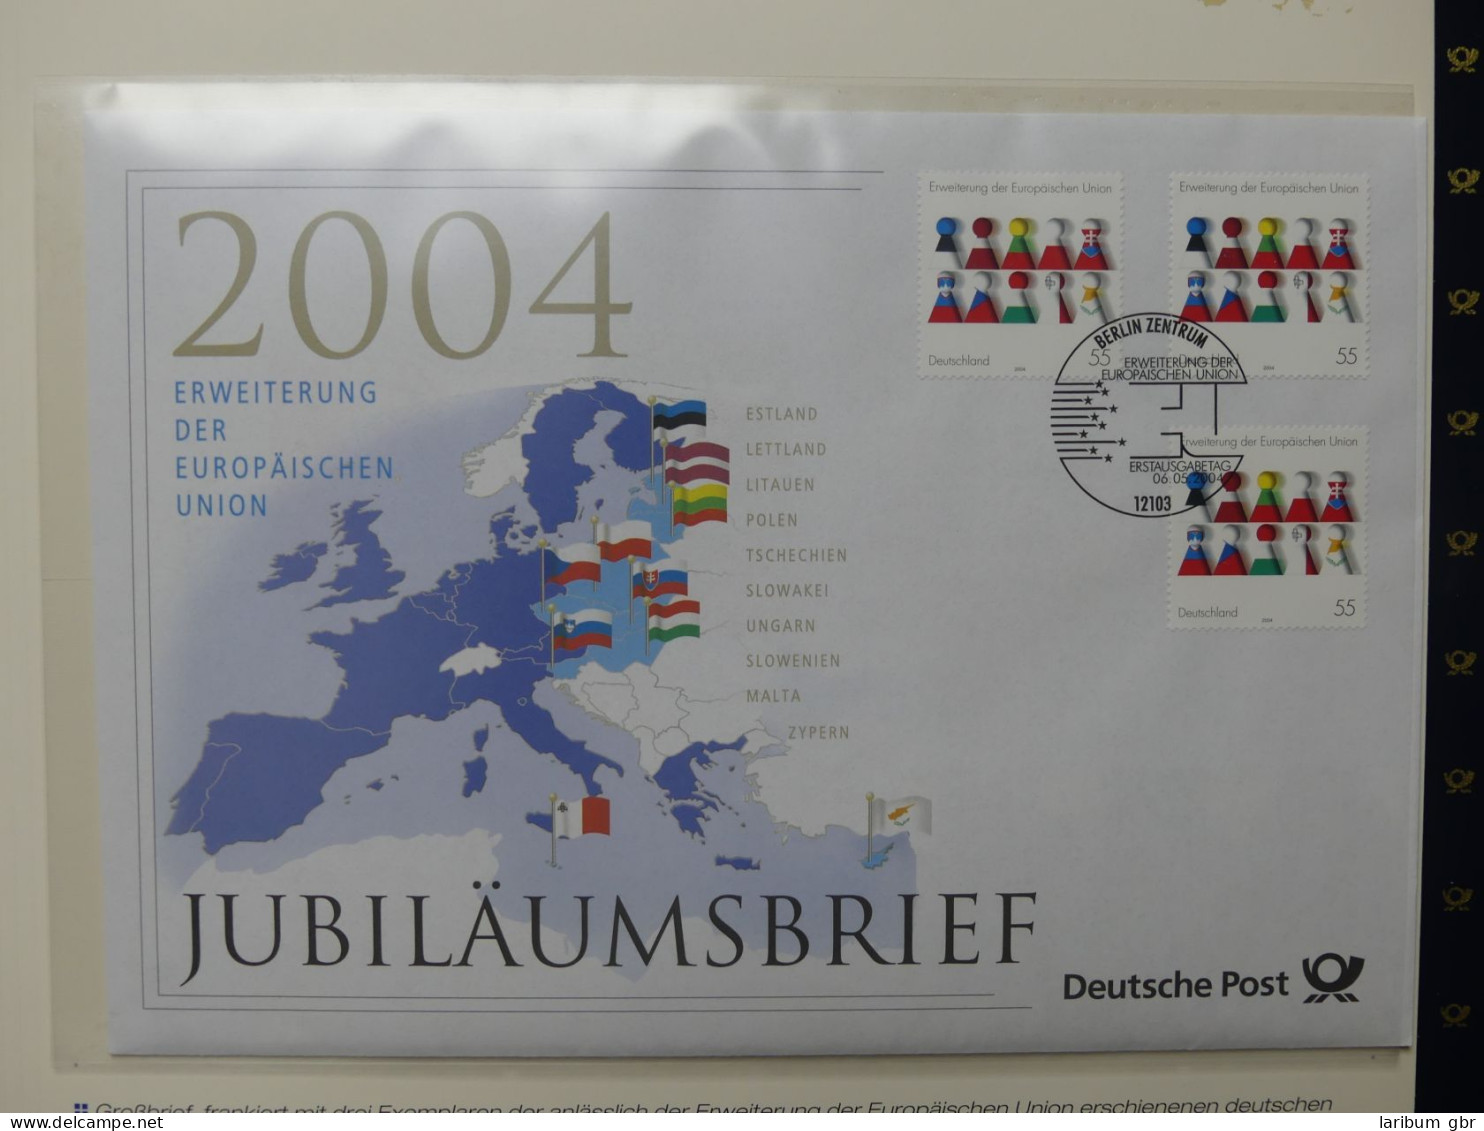 Themensammlung Der Weg Zum Euro Auf Briefmarken Aus Dem Post Abo #LW829 - Collections (en Albums)